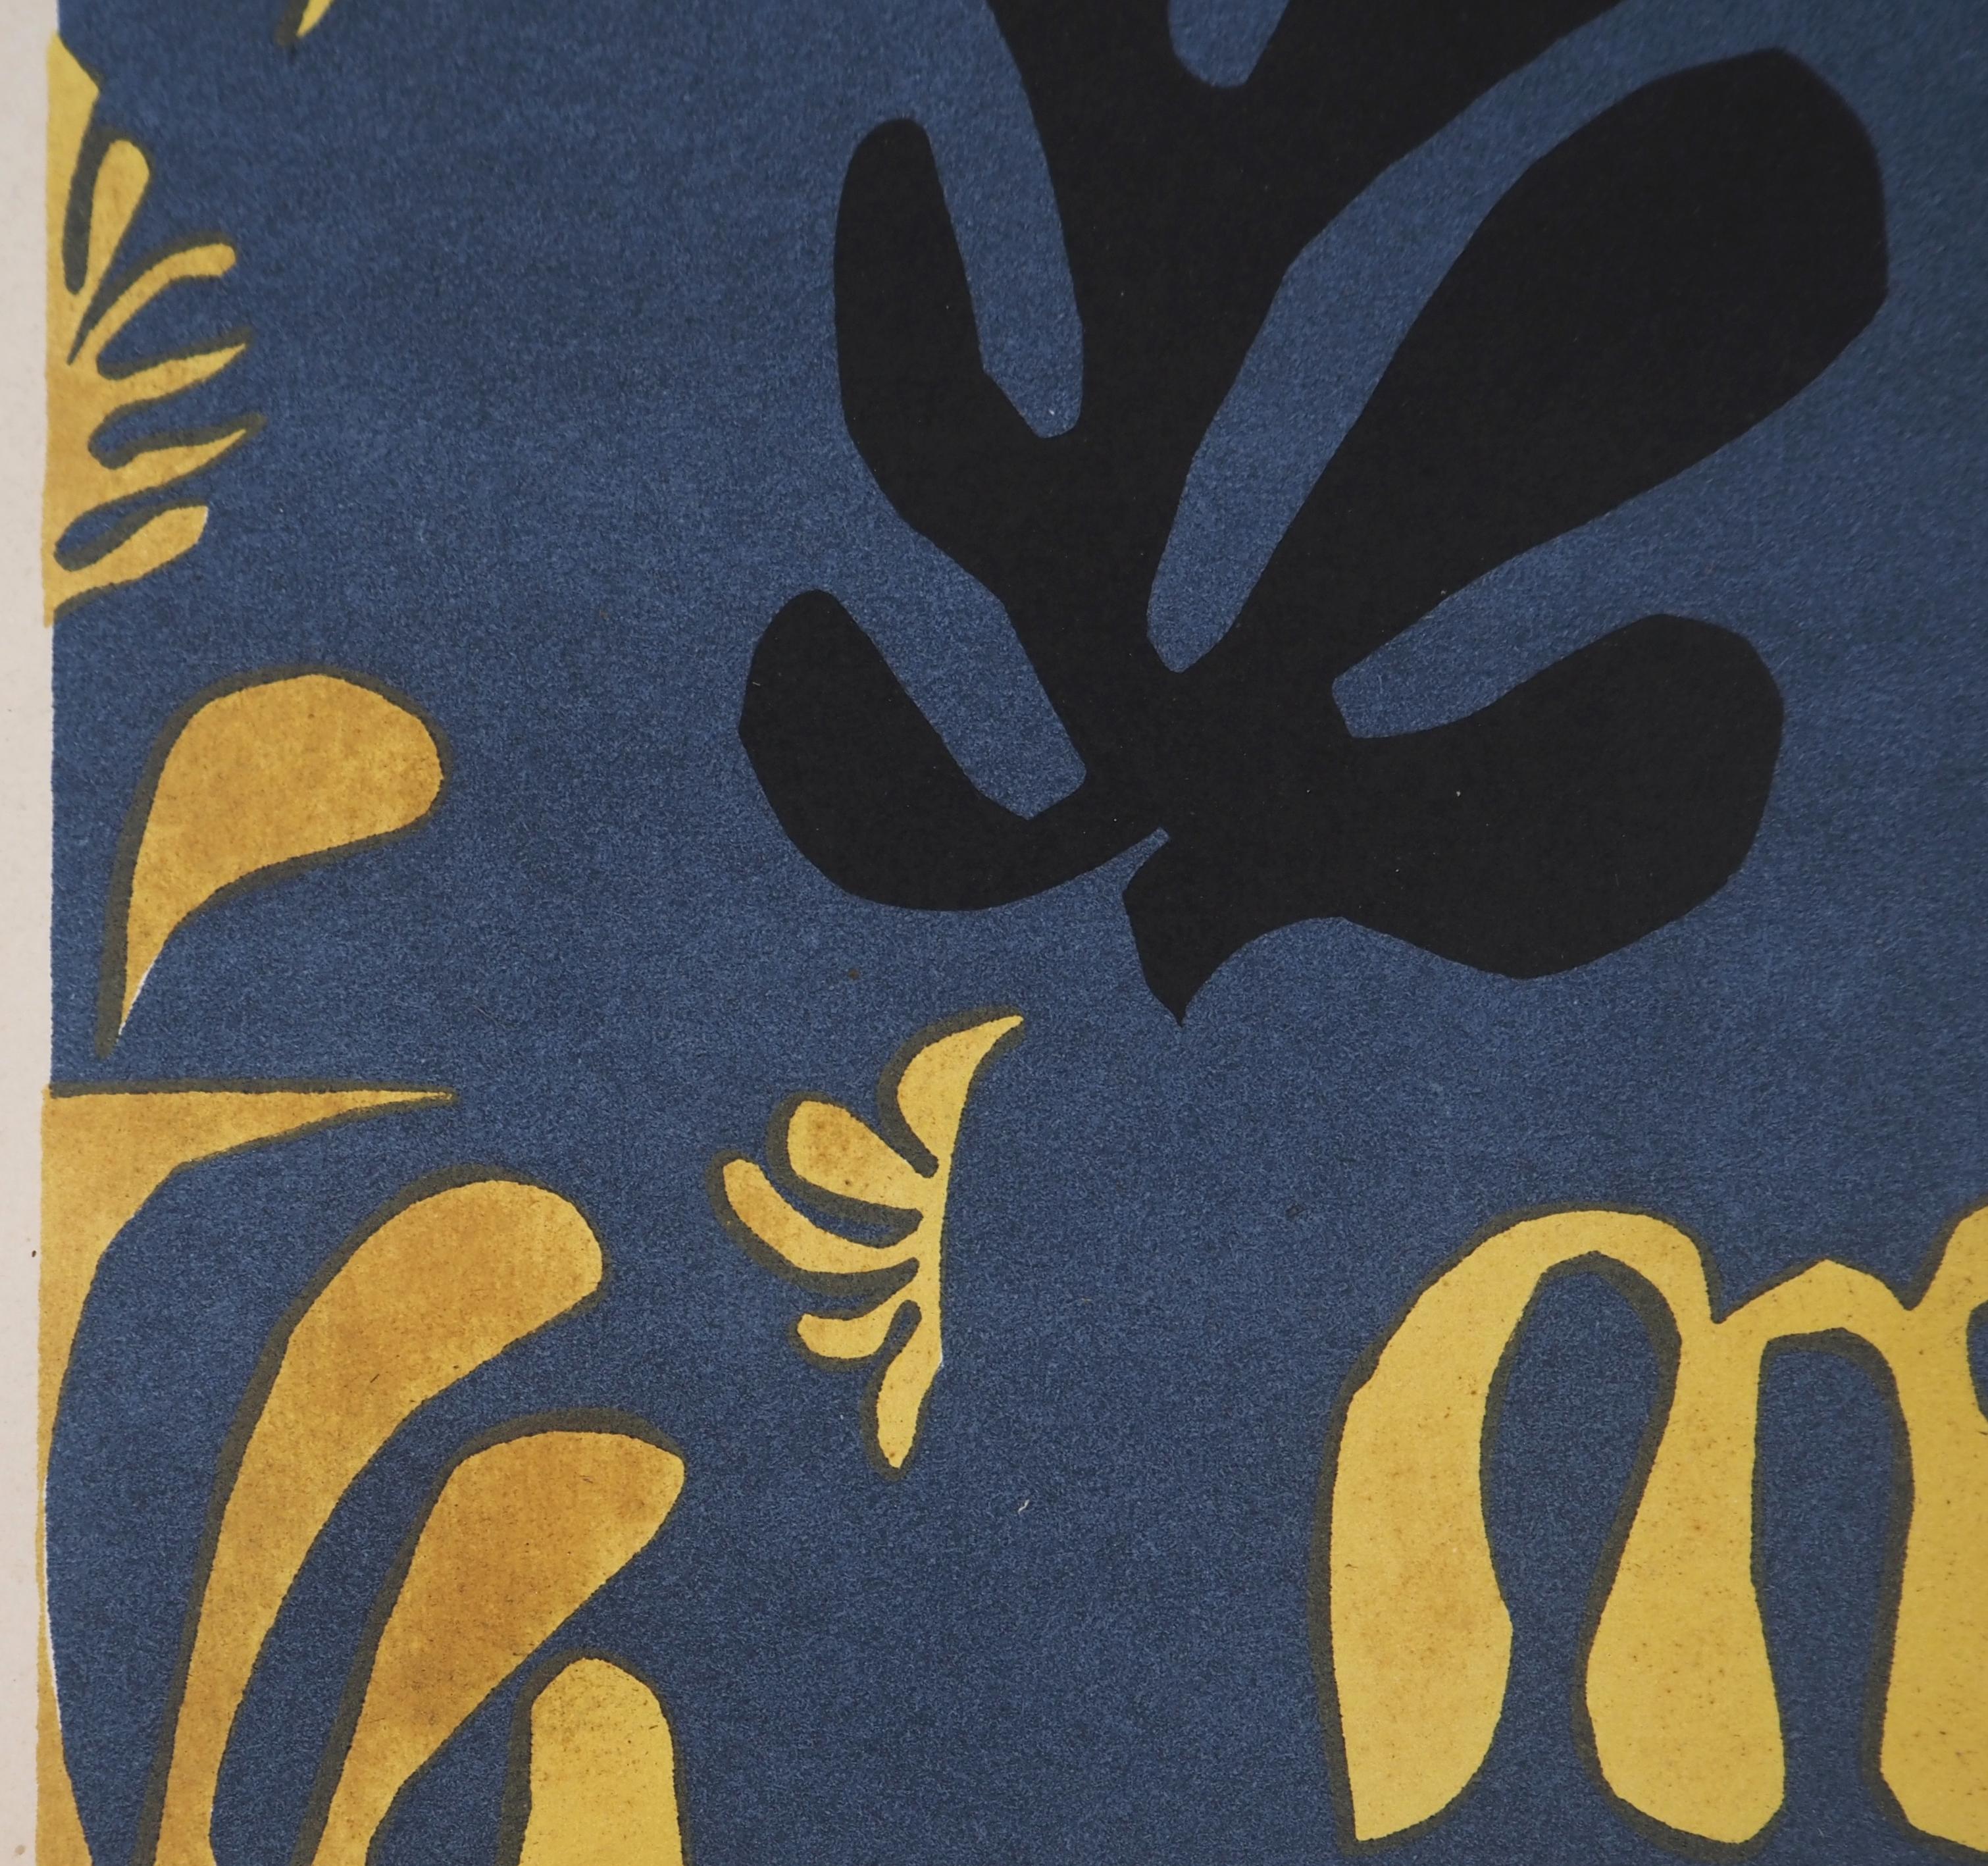 Henri Matisse
Vie sous-marine, 1954

Lithographie originale
Signature imprimée dans la plaque
Sur papier vélin léger 31 x 24 cm (c. 12.5 x 10 in)

REFRENCES : Publié par San Lazzaro / XXème Siècle, Paris en 1954

Très bon état, papier légèrement